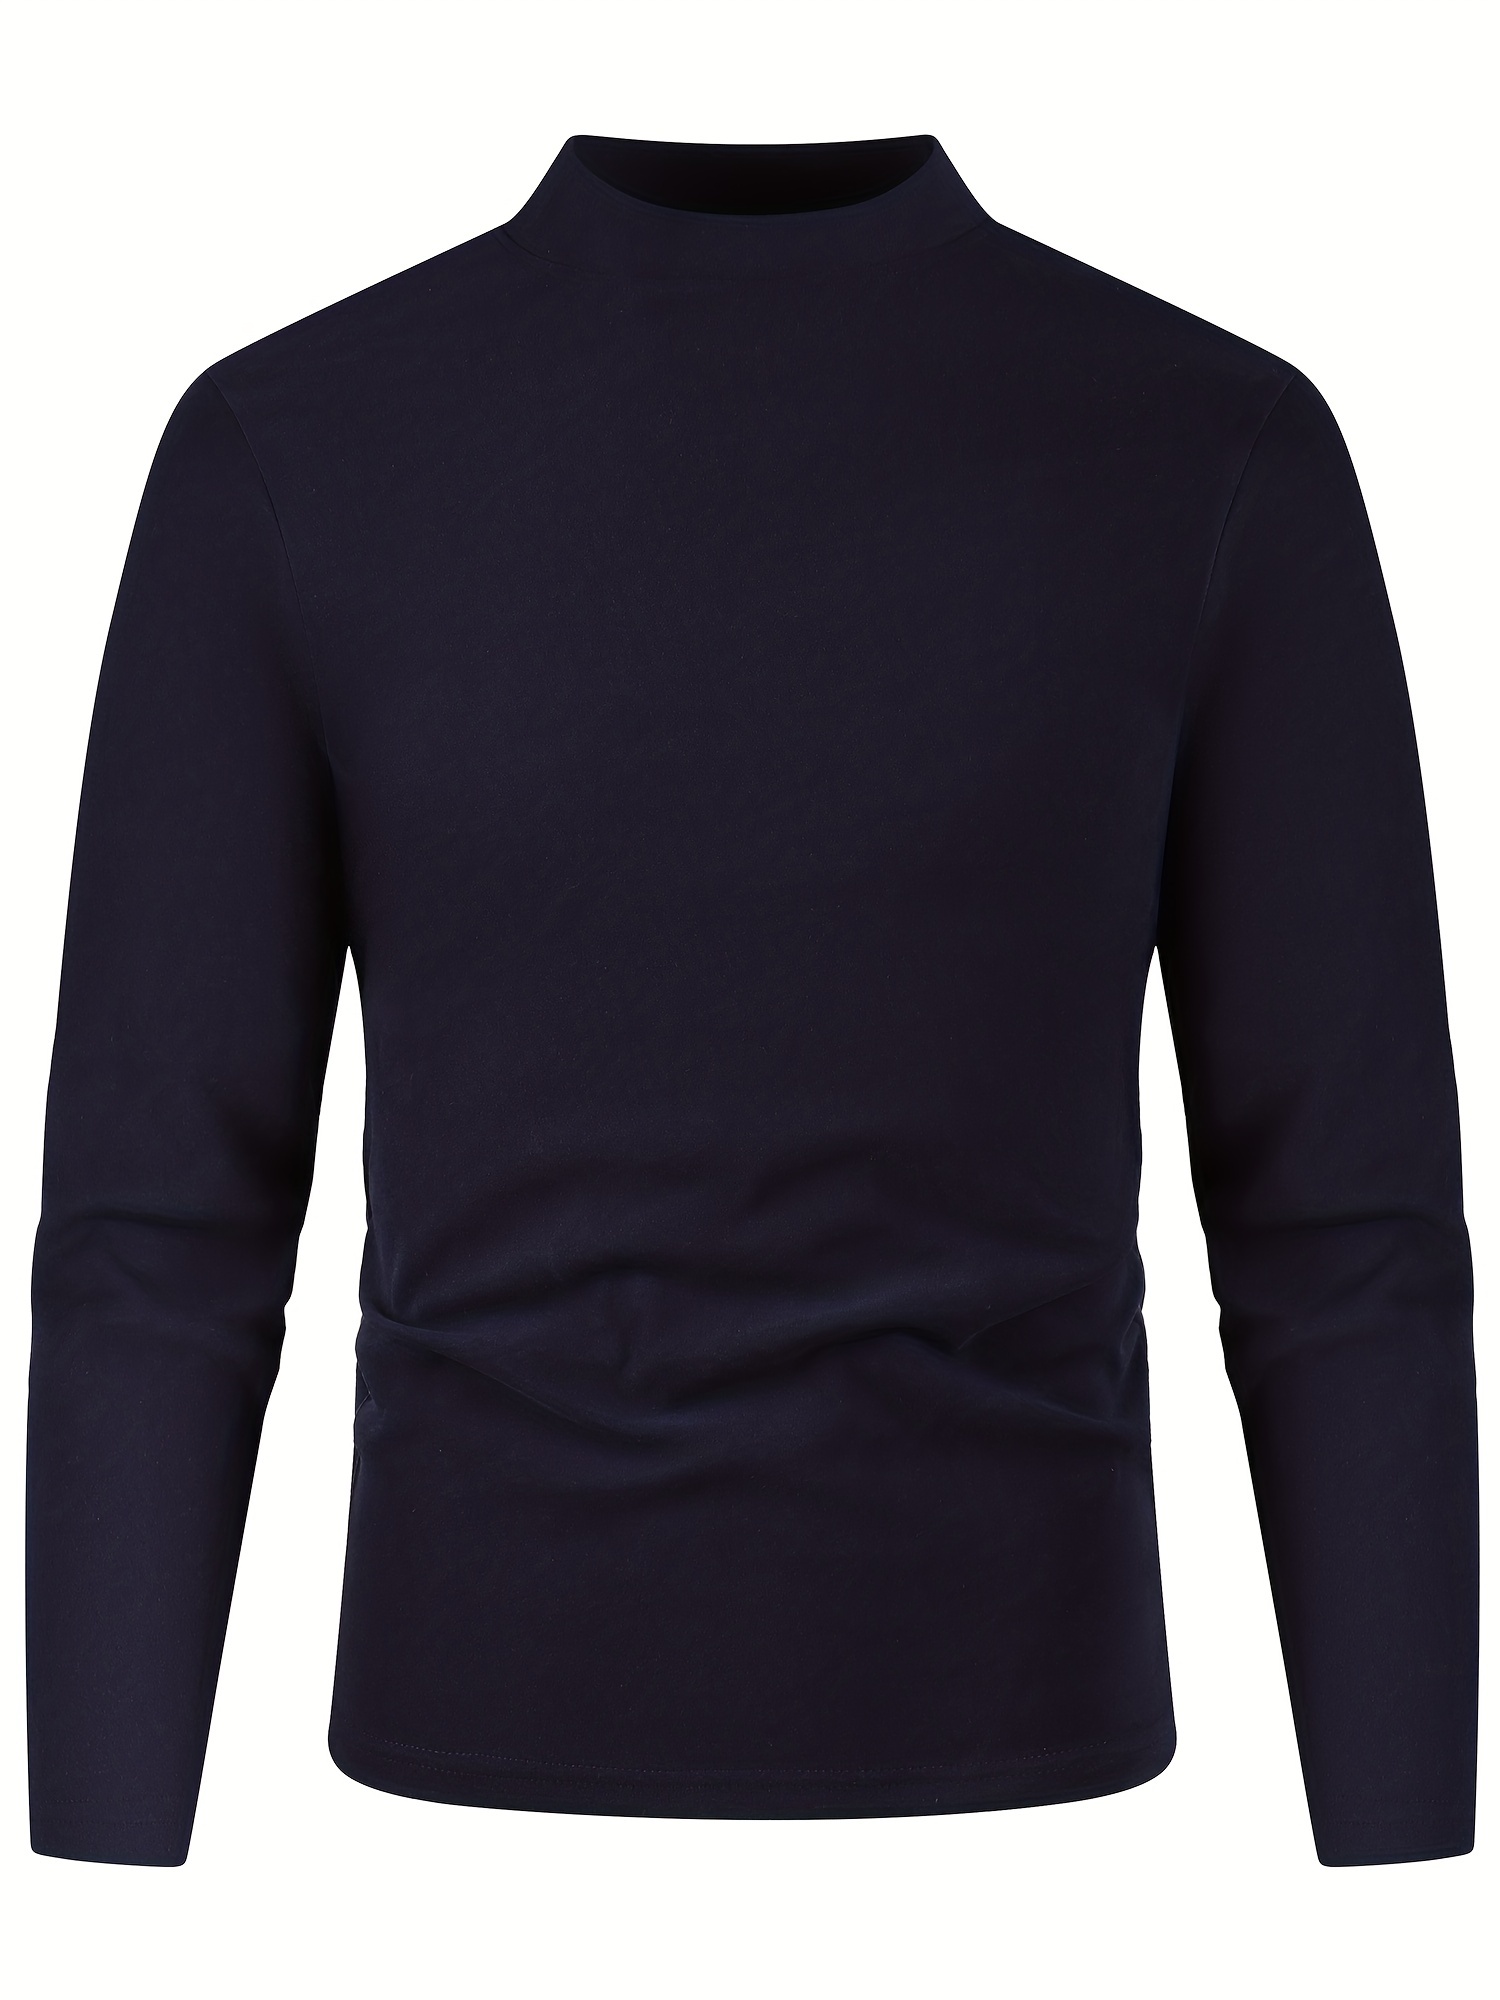 Camiseta interior térmica de cuello alto falso para hombre, camisas de capa  base de manga larga